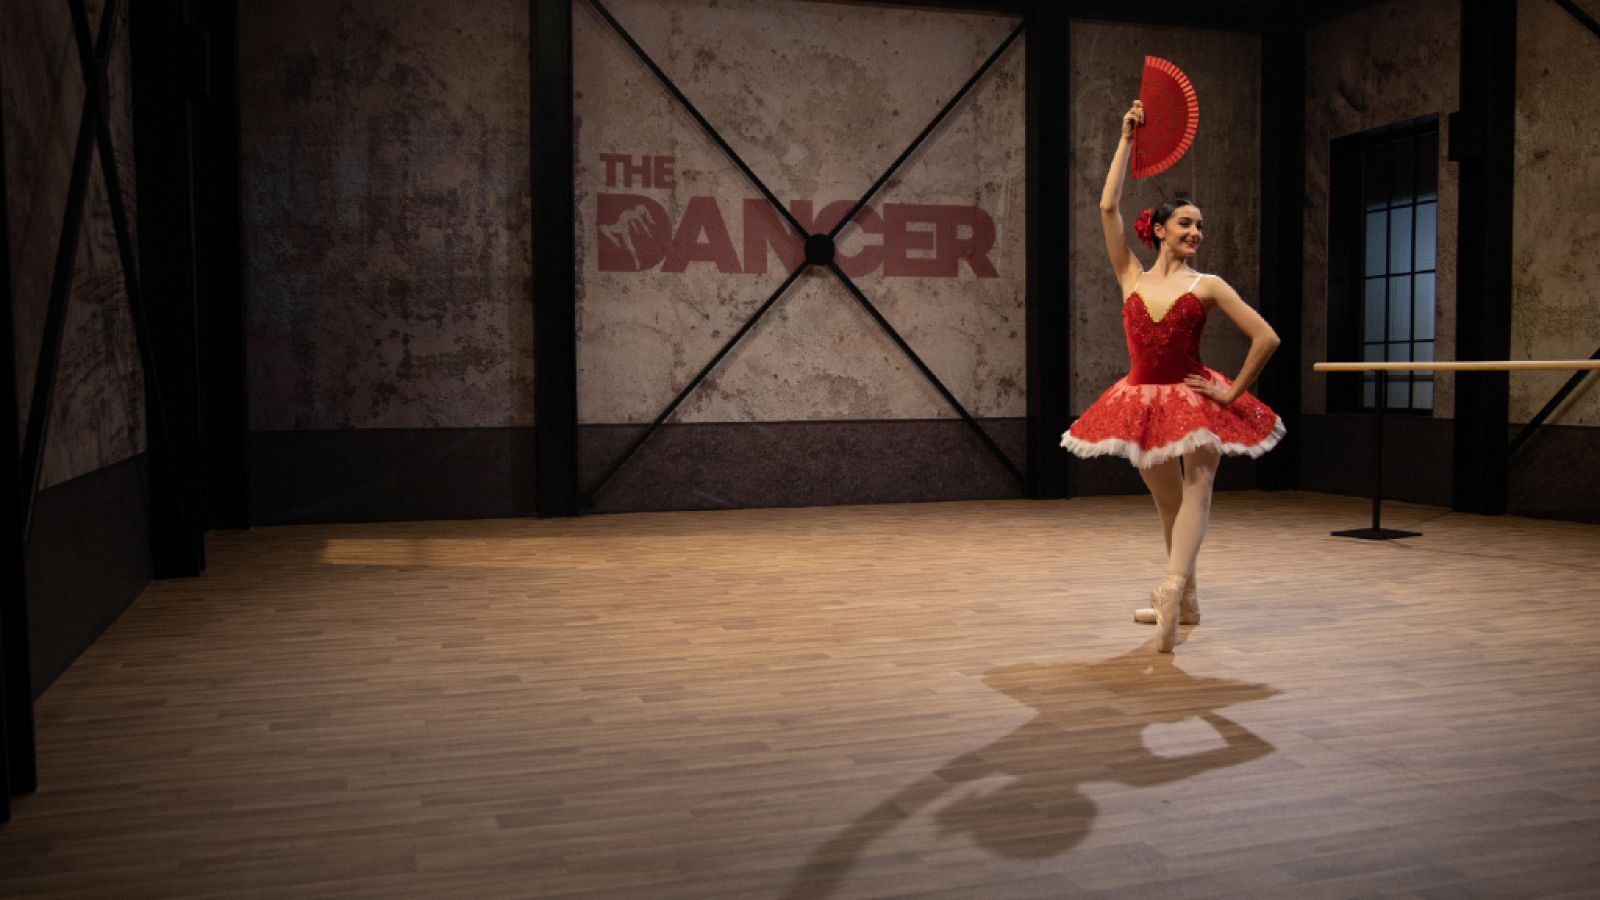 The Dancer - Alegato y actuación de Irene Estévez